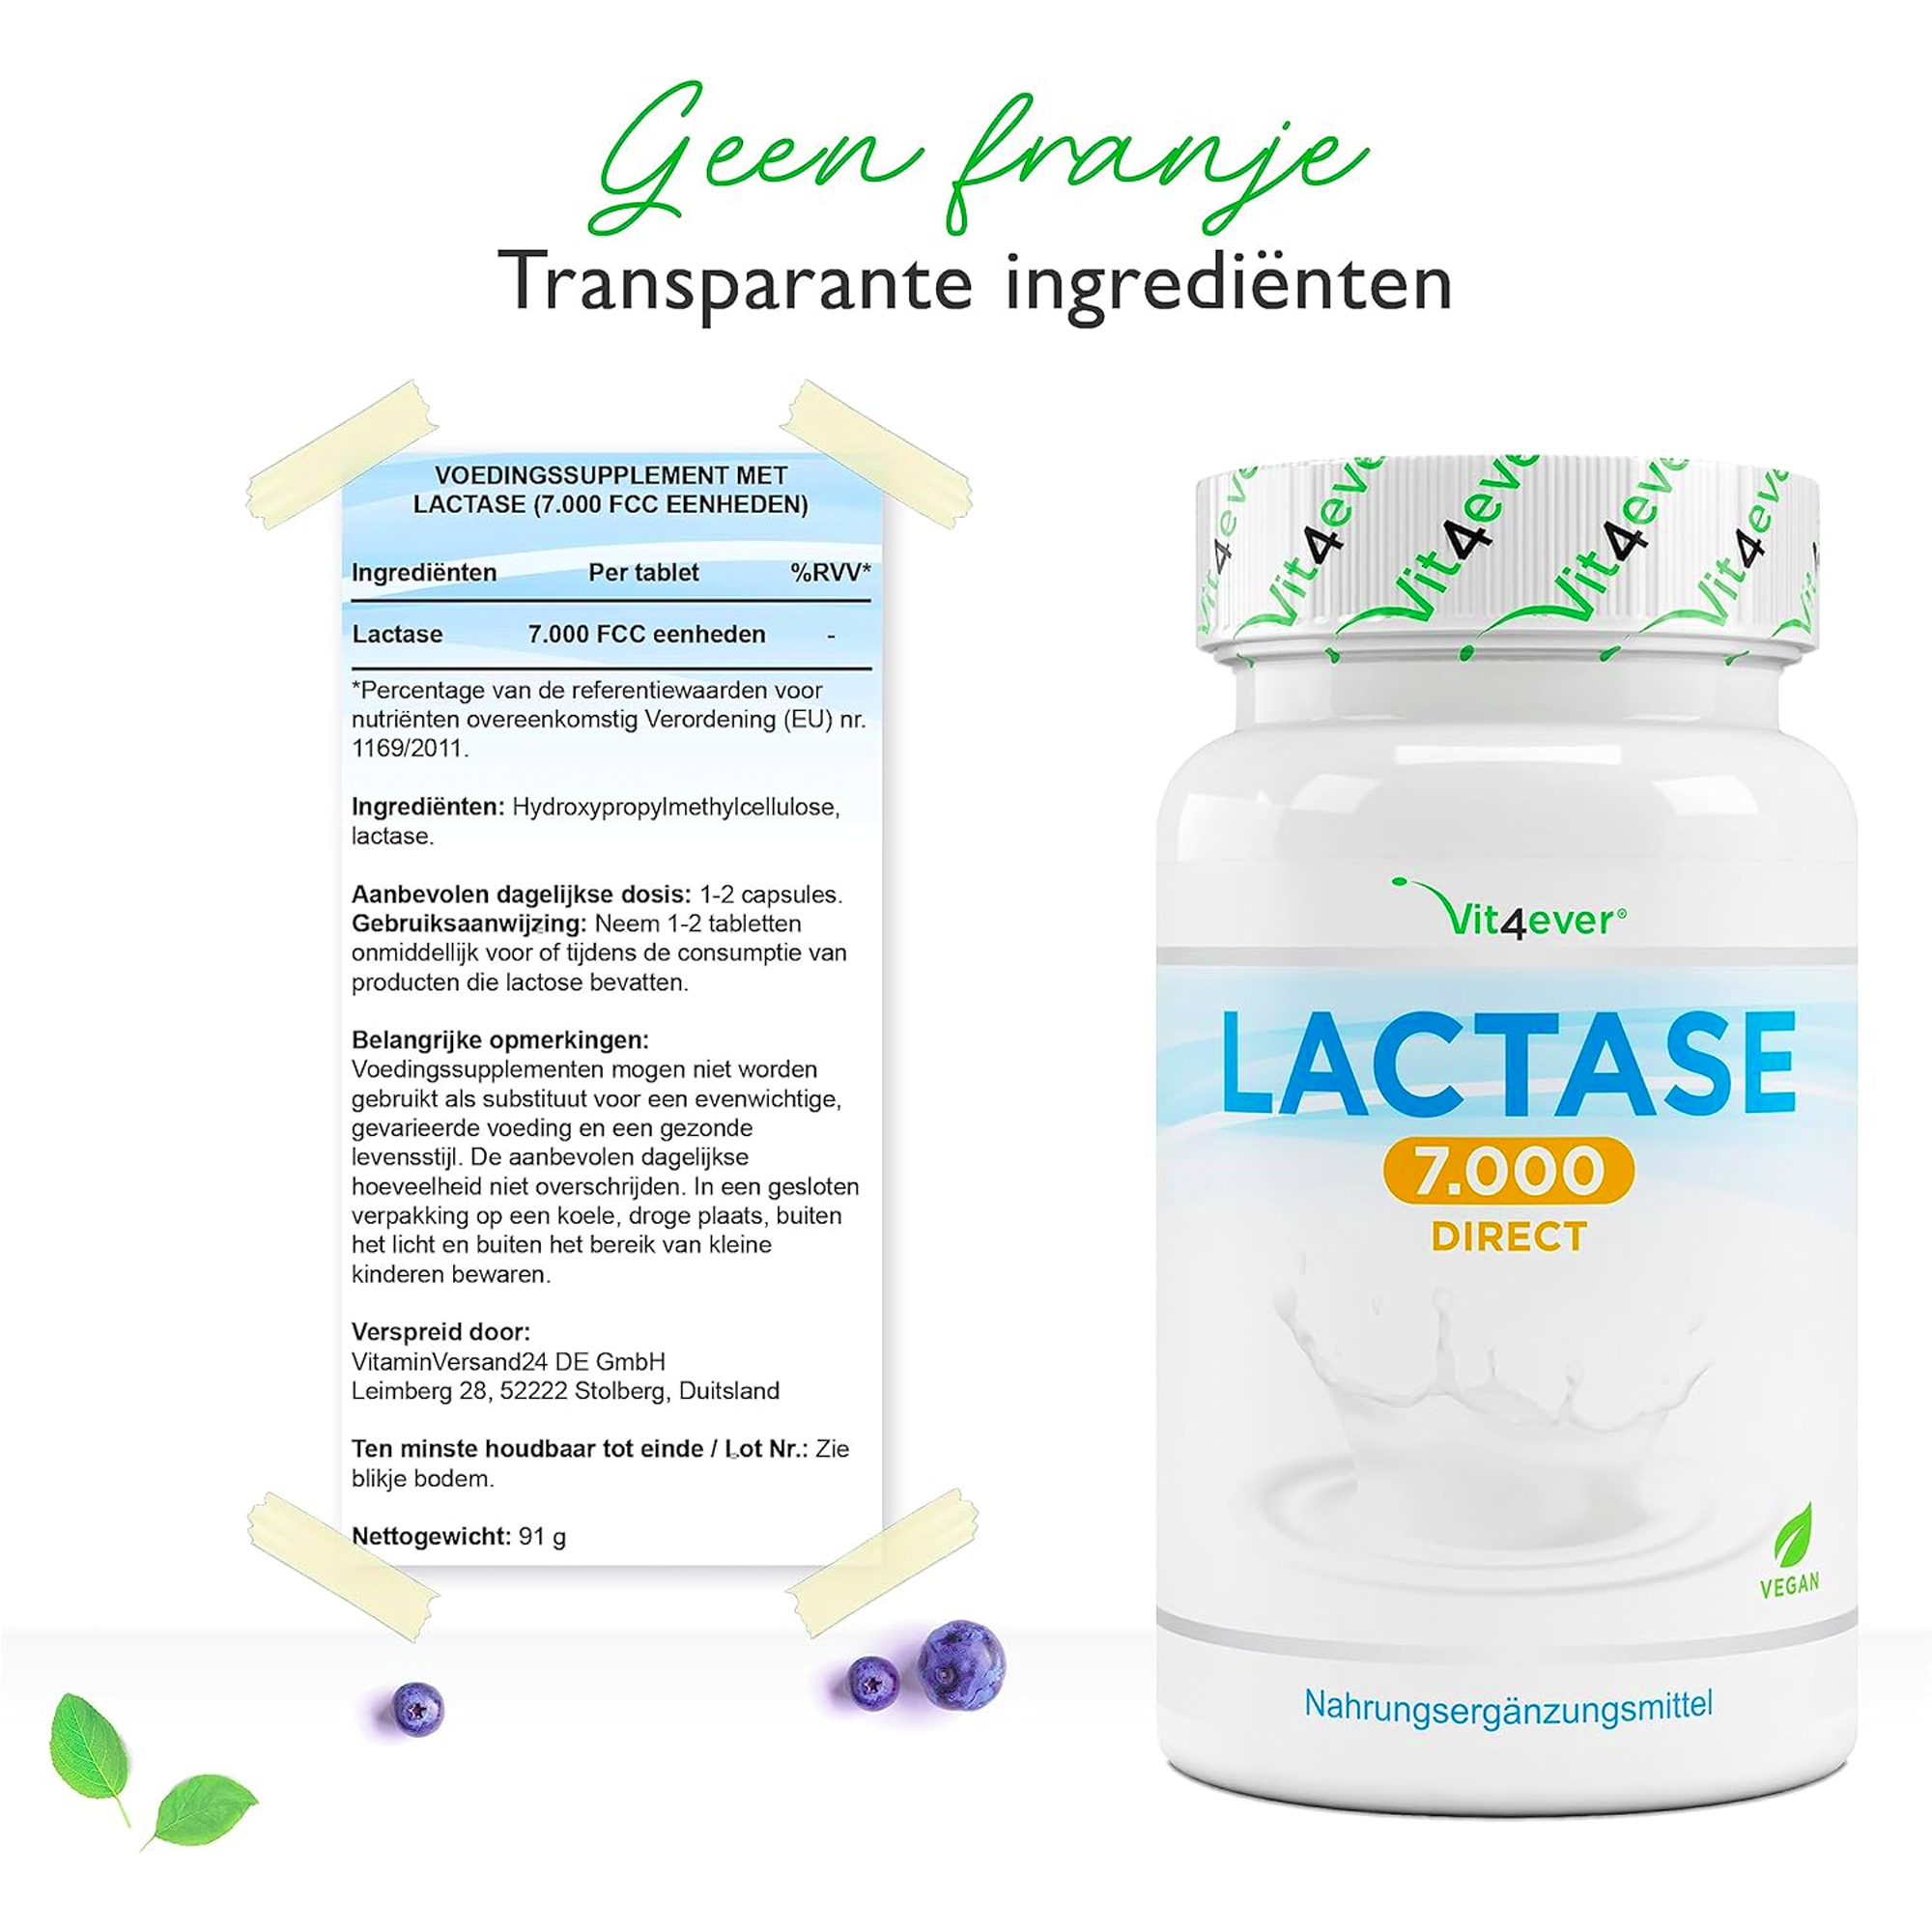 Lactase 7.000 | 365 tabletten Hooggedoseerd met 7.000 FCC-eenheden | Voor lactose-intolerantie + melk-intolerantie | Vit4ever